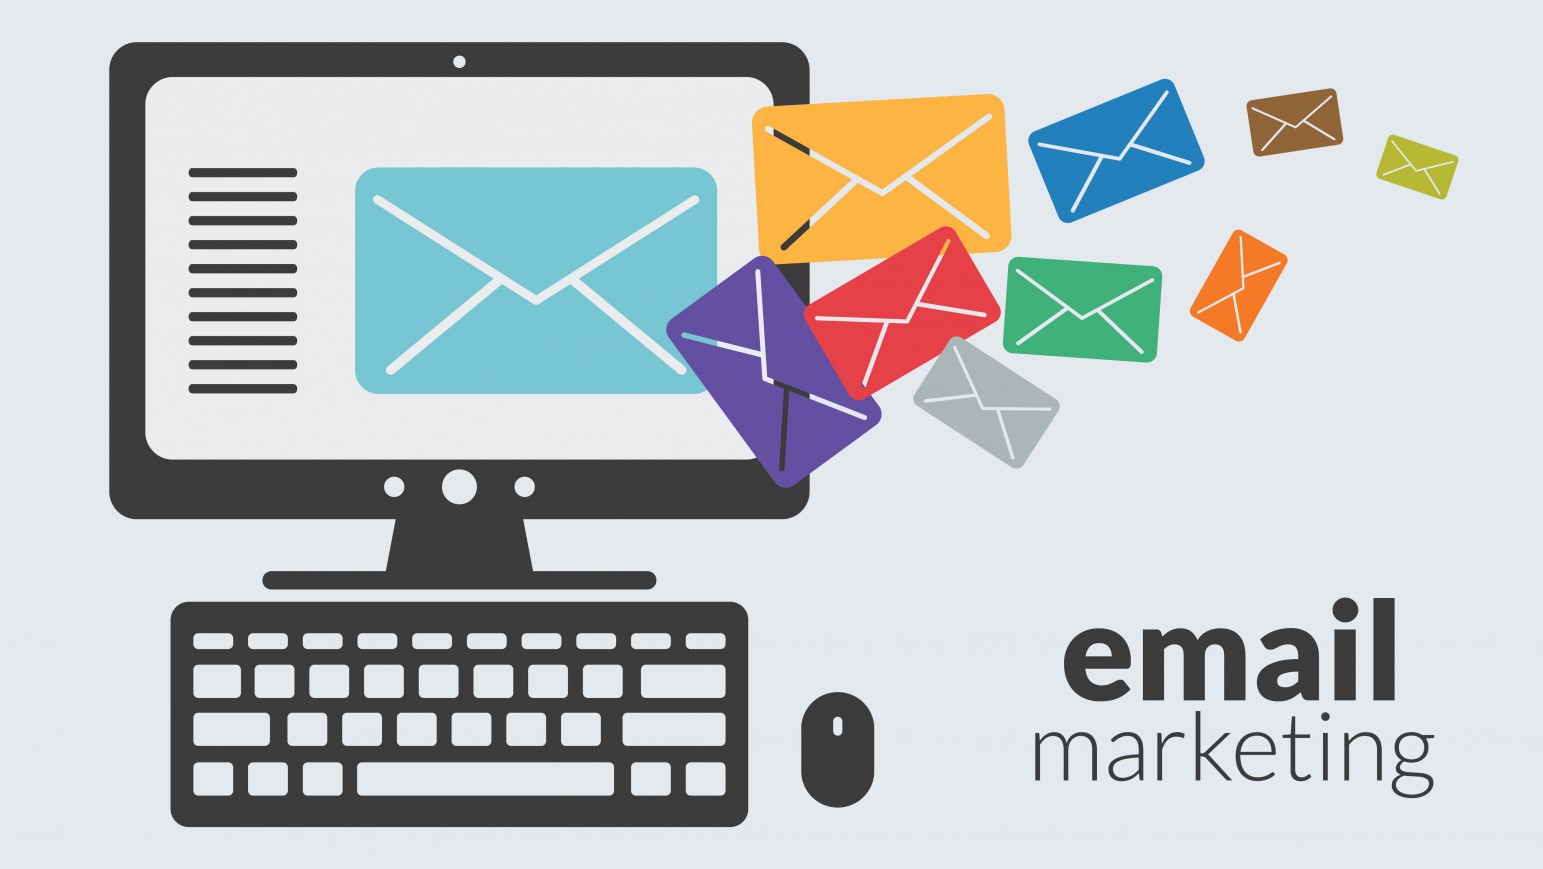 Email Marketing là gì, làm email marketing như thế nào cho hiệu quả?